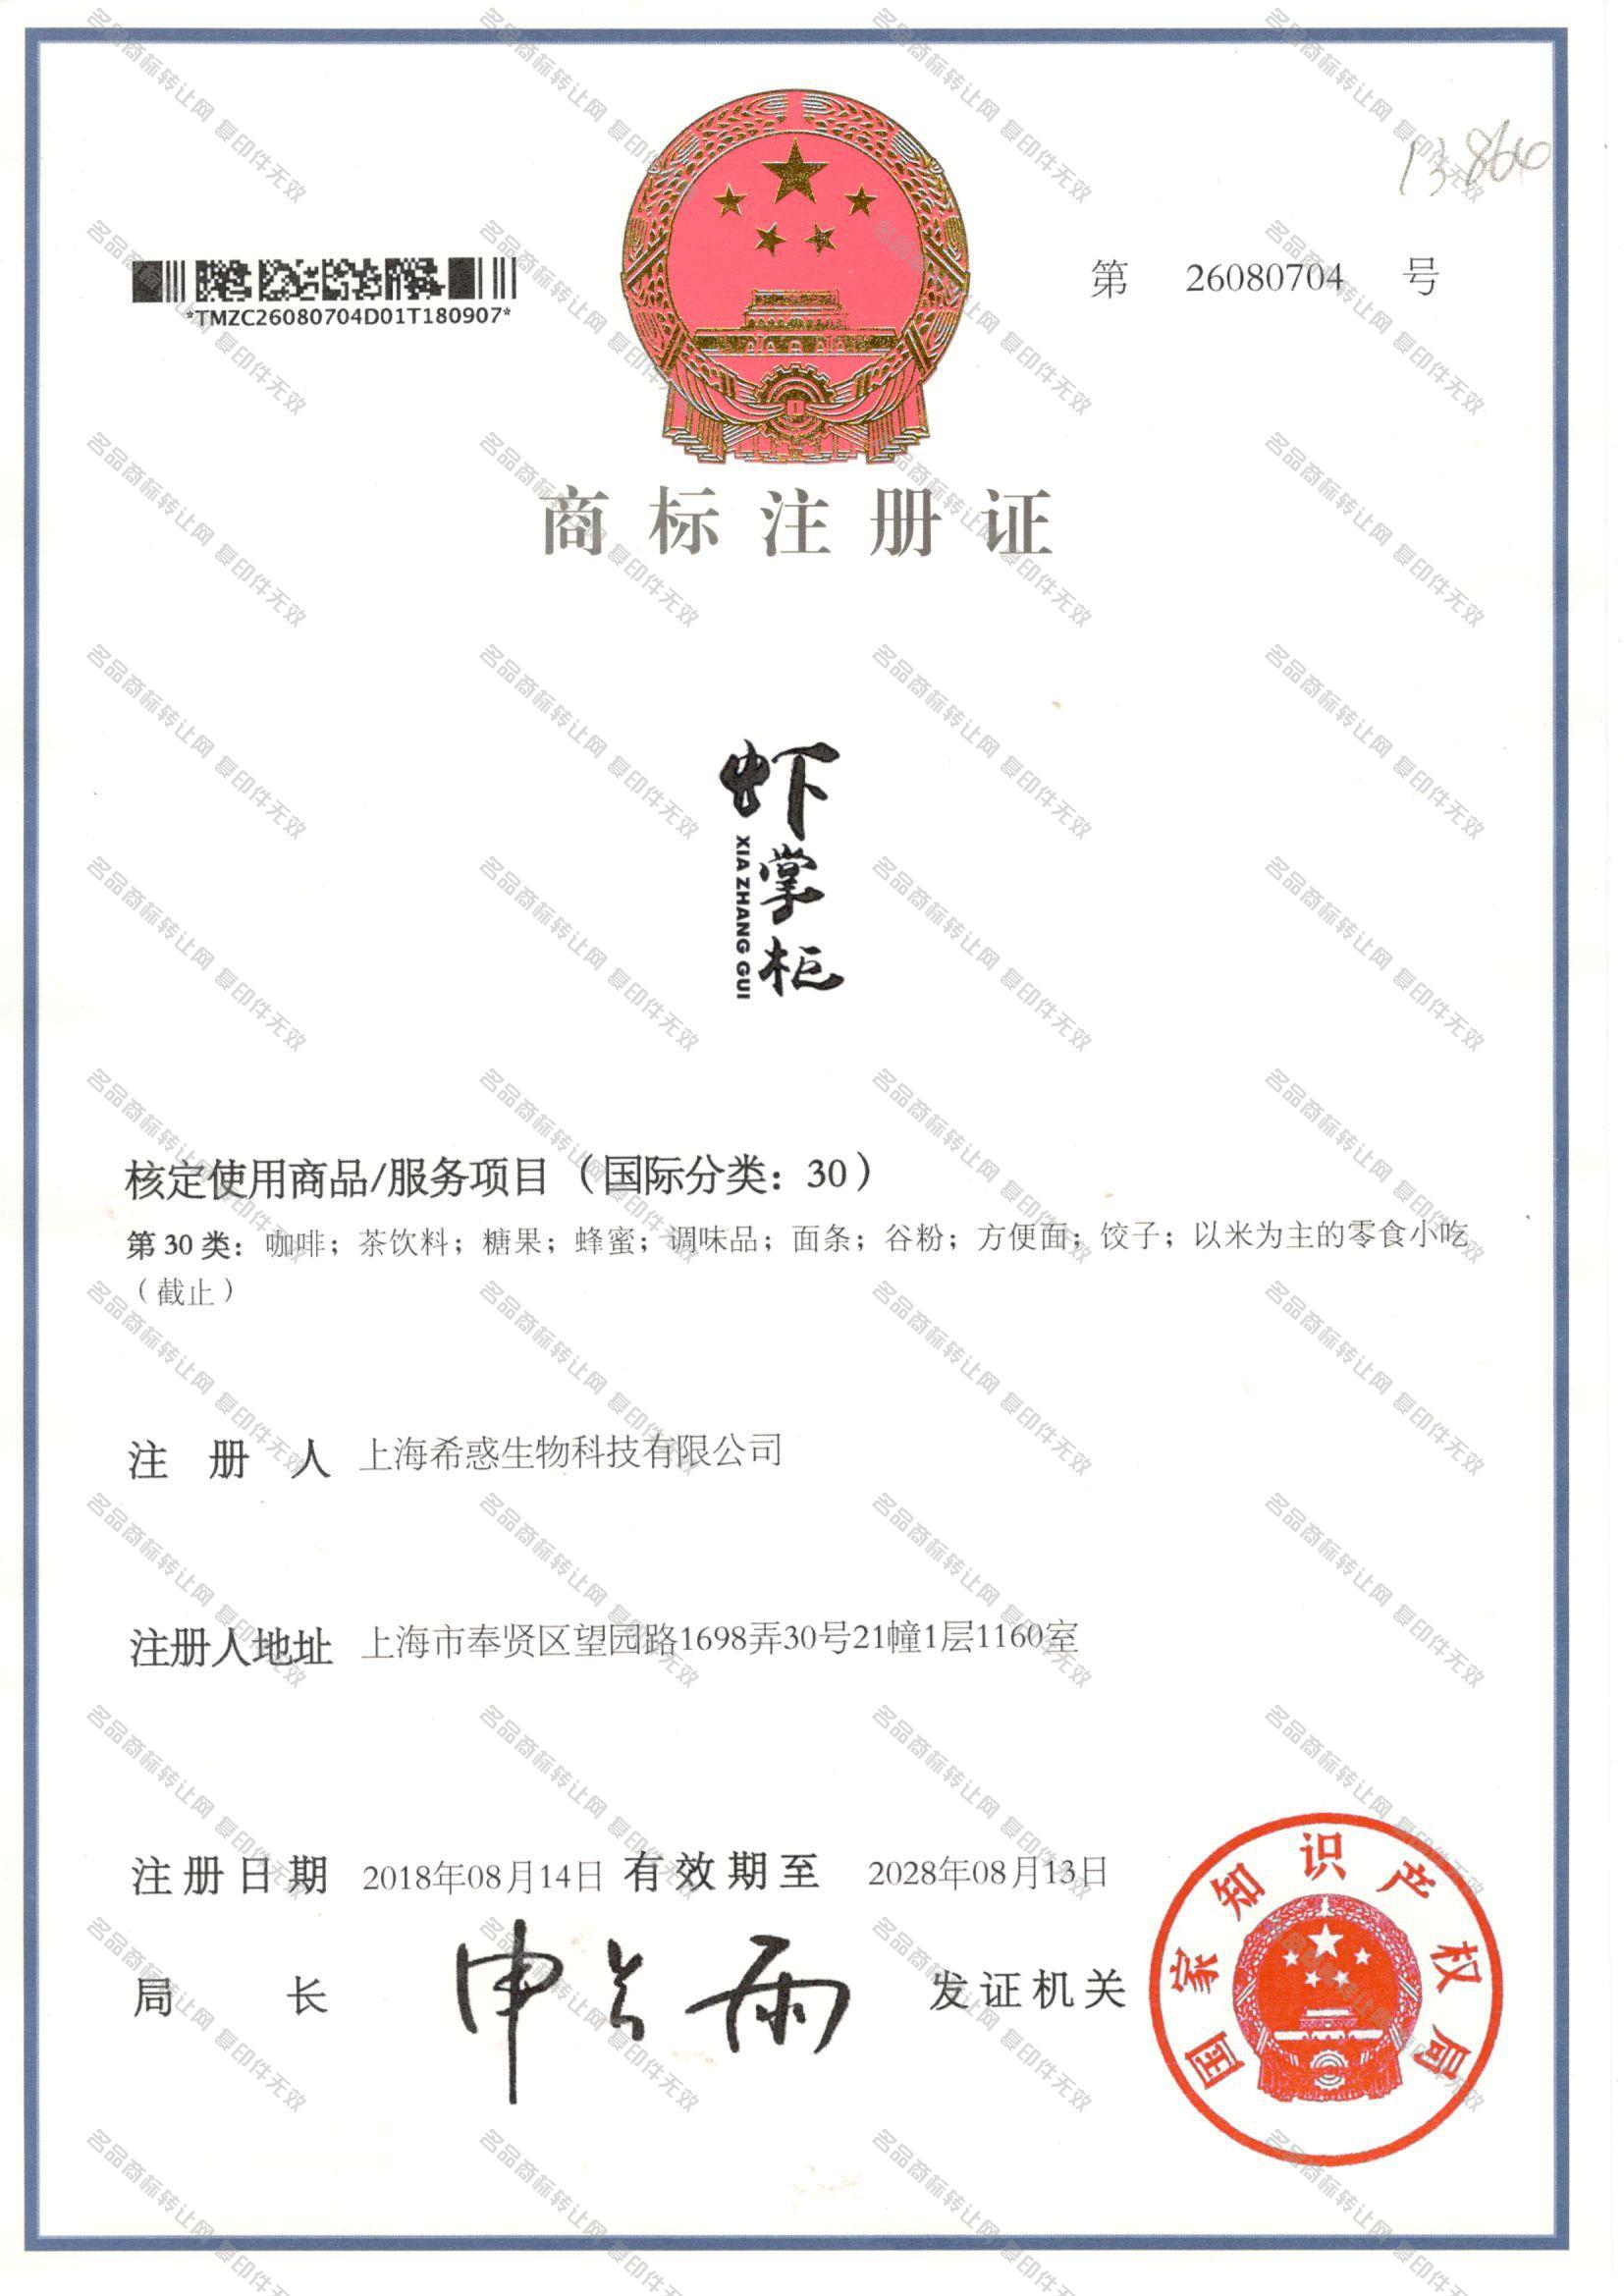 虾掌柜 XIAZHANGGUI注册证